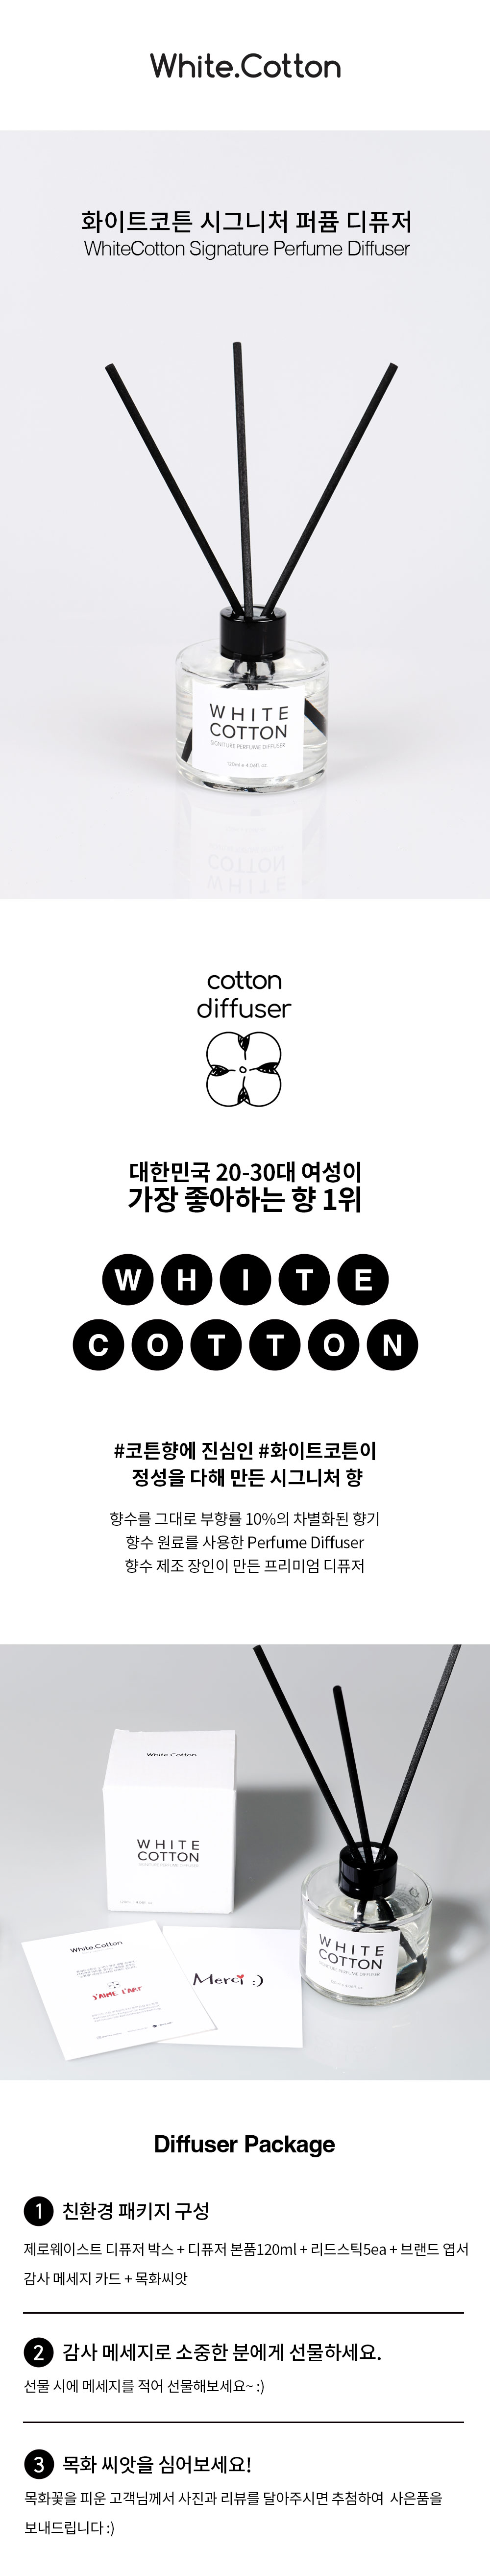 White.Cotton_whitecotton-signature-perfume-diffuser_detail-page02_01_100422.jpg